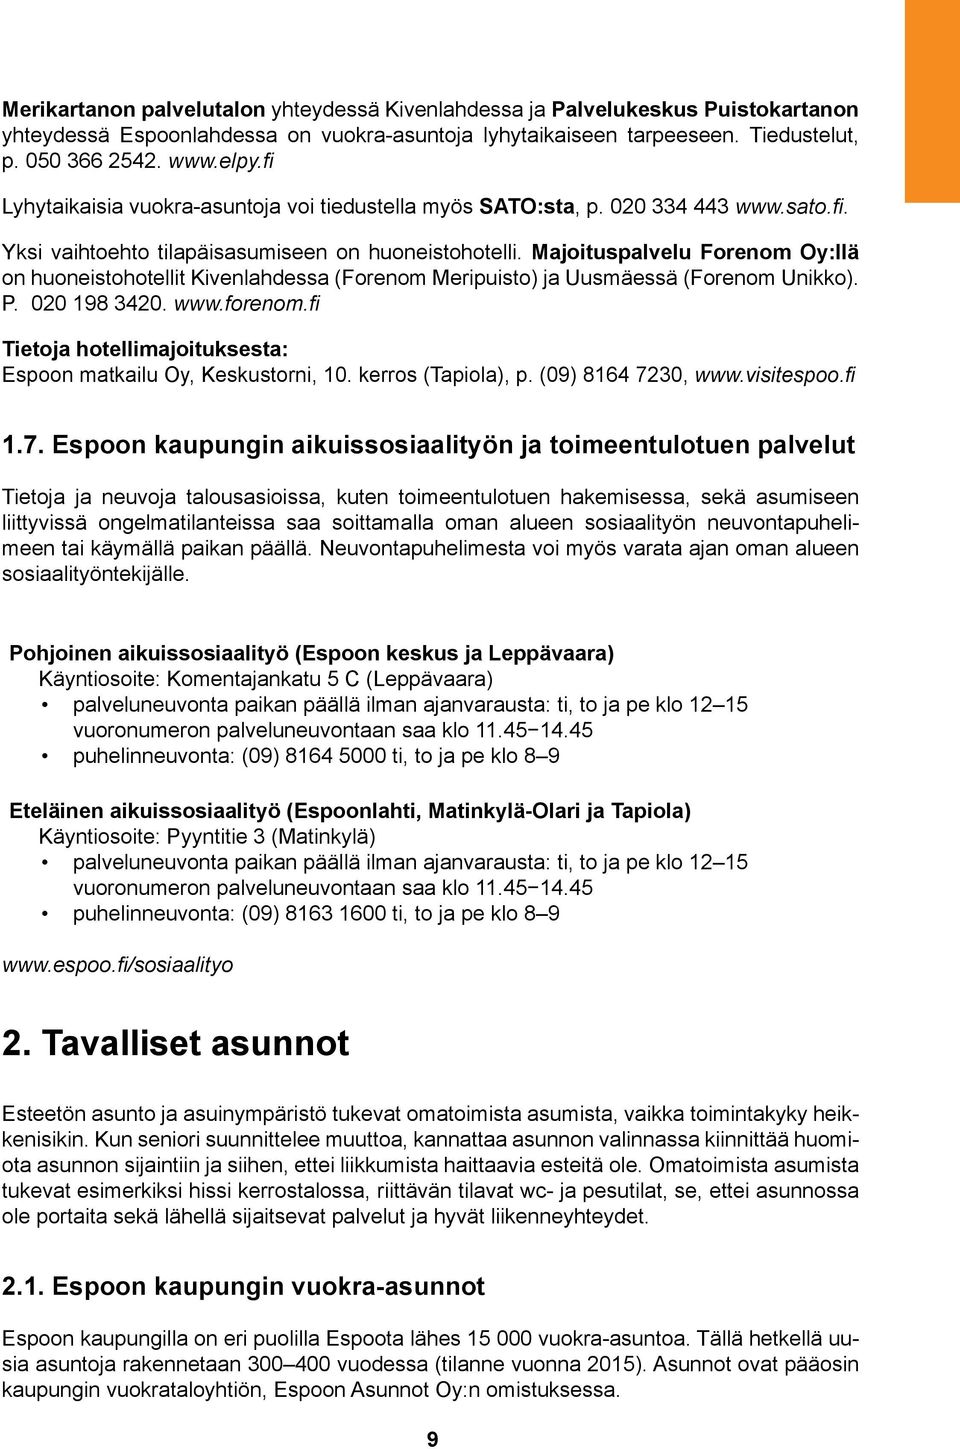 Majoituspalvelu Forenom Oy:llä on huoneistohotellit Kivenlahdessa (Forenom Meripuisto) ja Uusmäessä (Forenom Unikko). P. 020 198 3420. www.forenom.